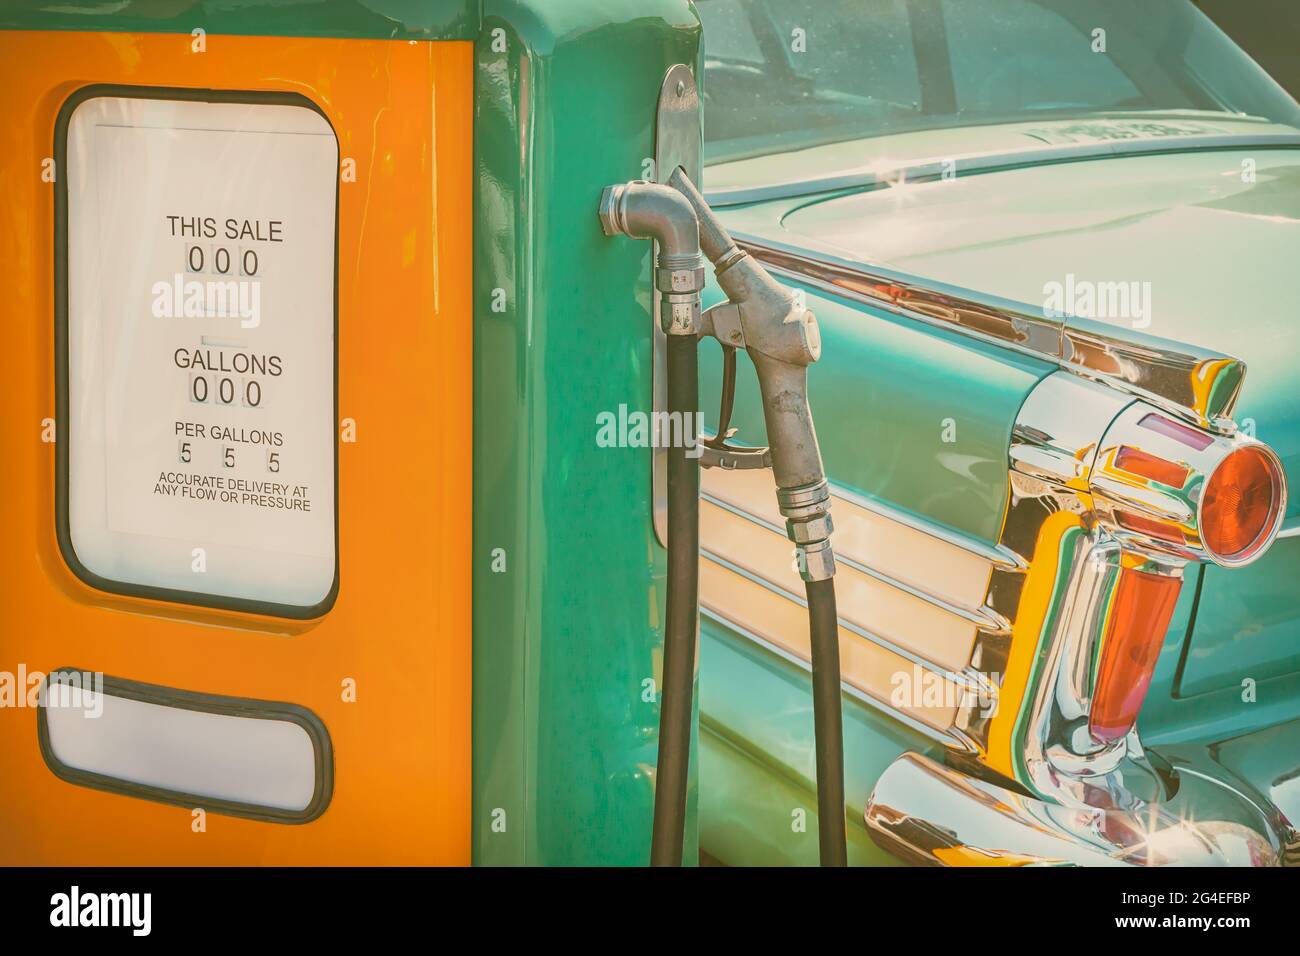 Immagine in stile retrò di una vecchia pompa di alimentazione e di un'auto verde classica Foto Stock